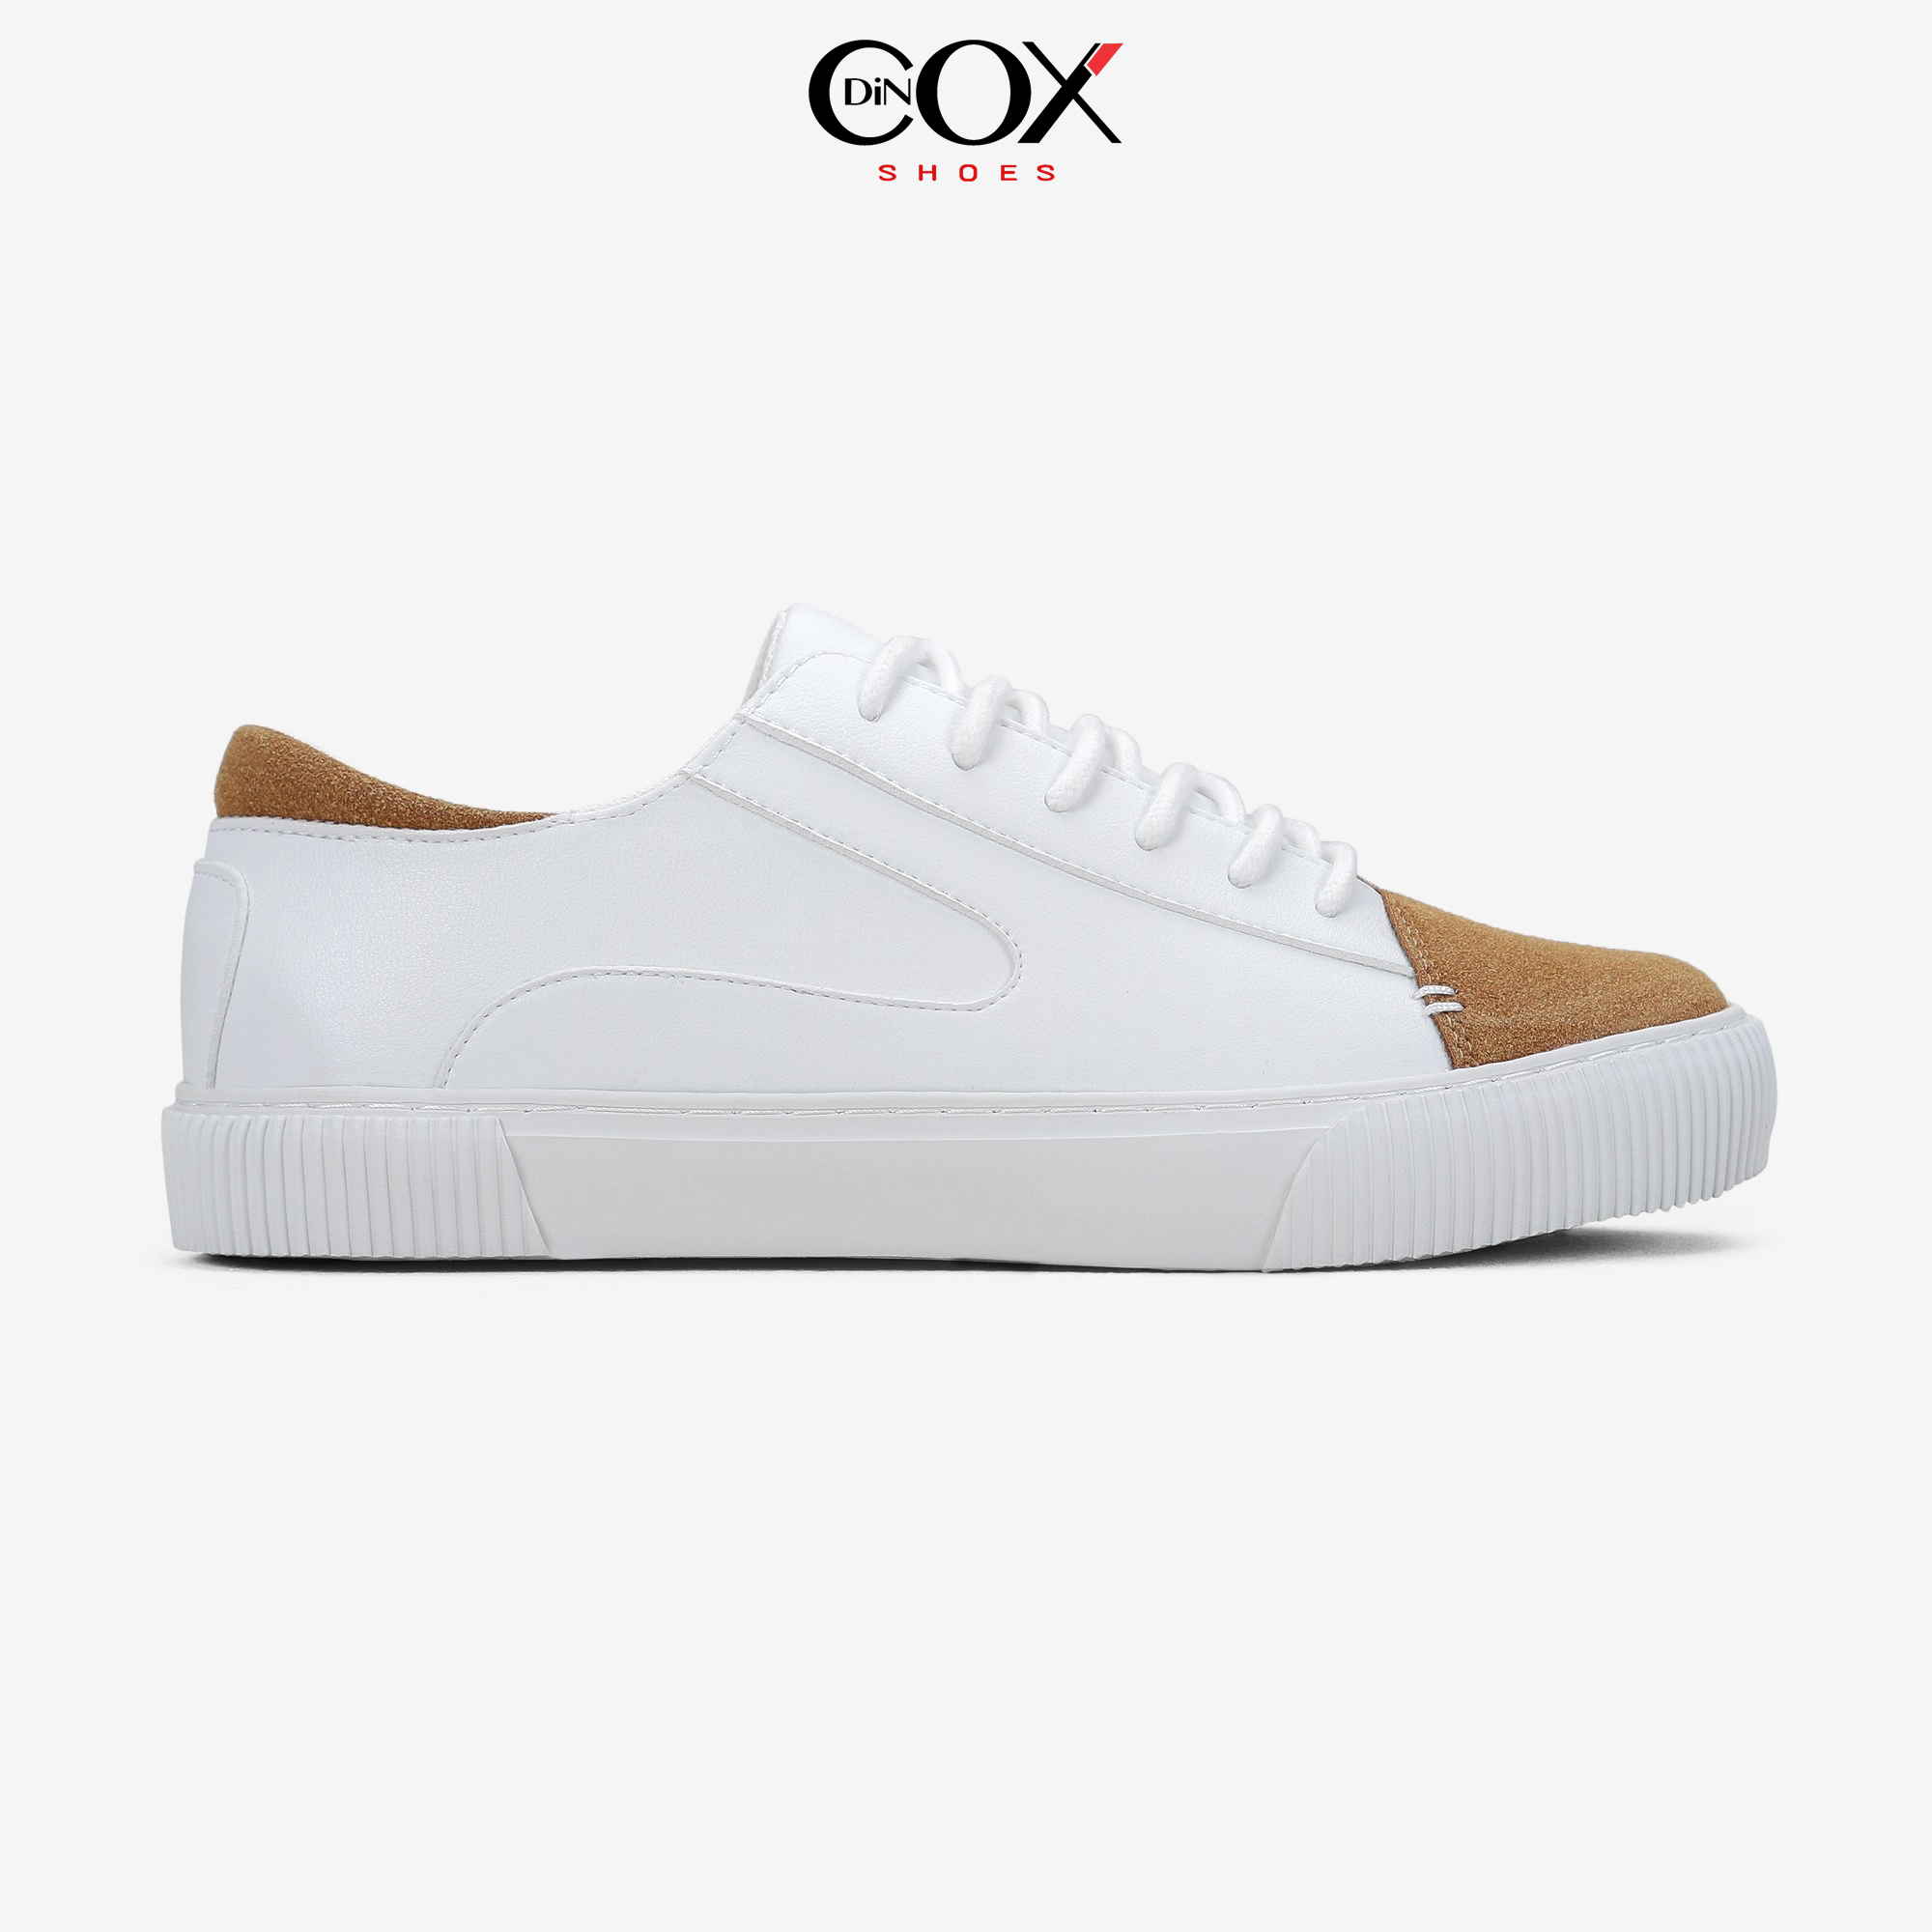 Giày Sneaker Dincox D07 White Tan thumbnail